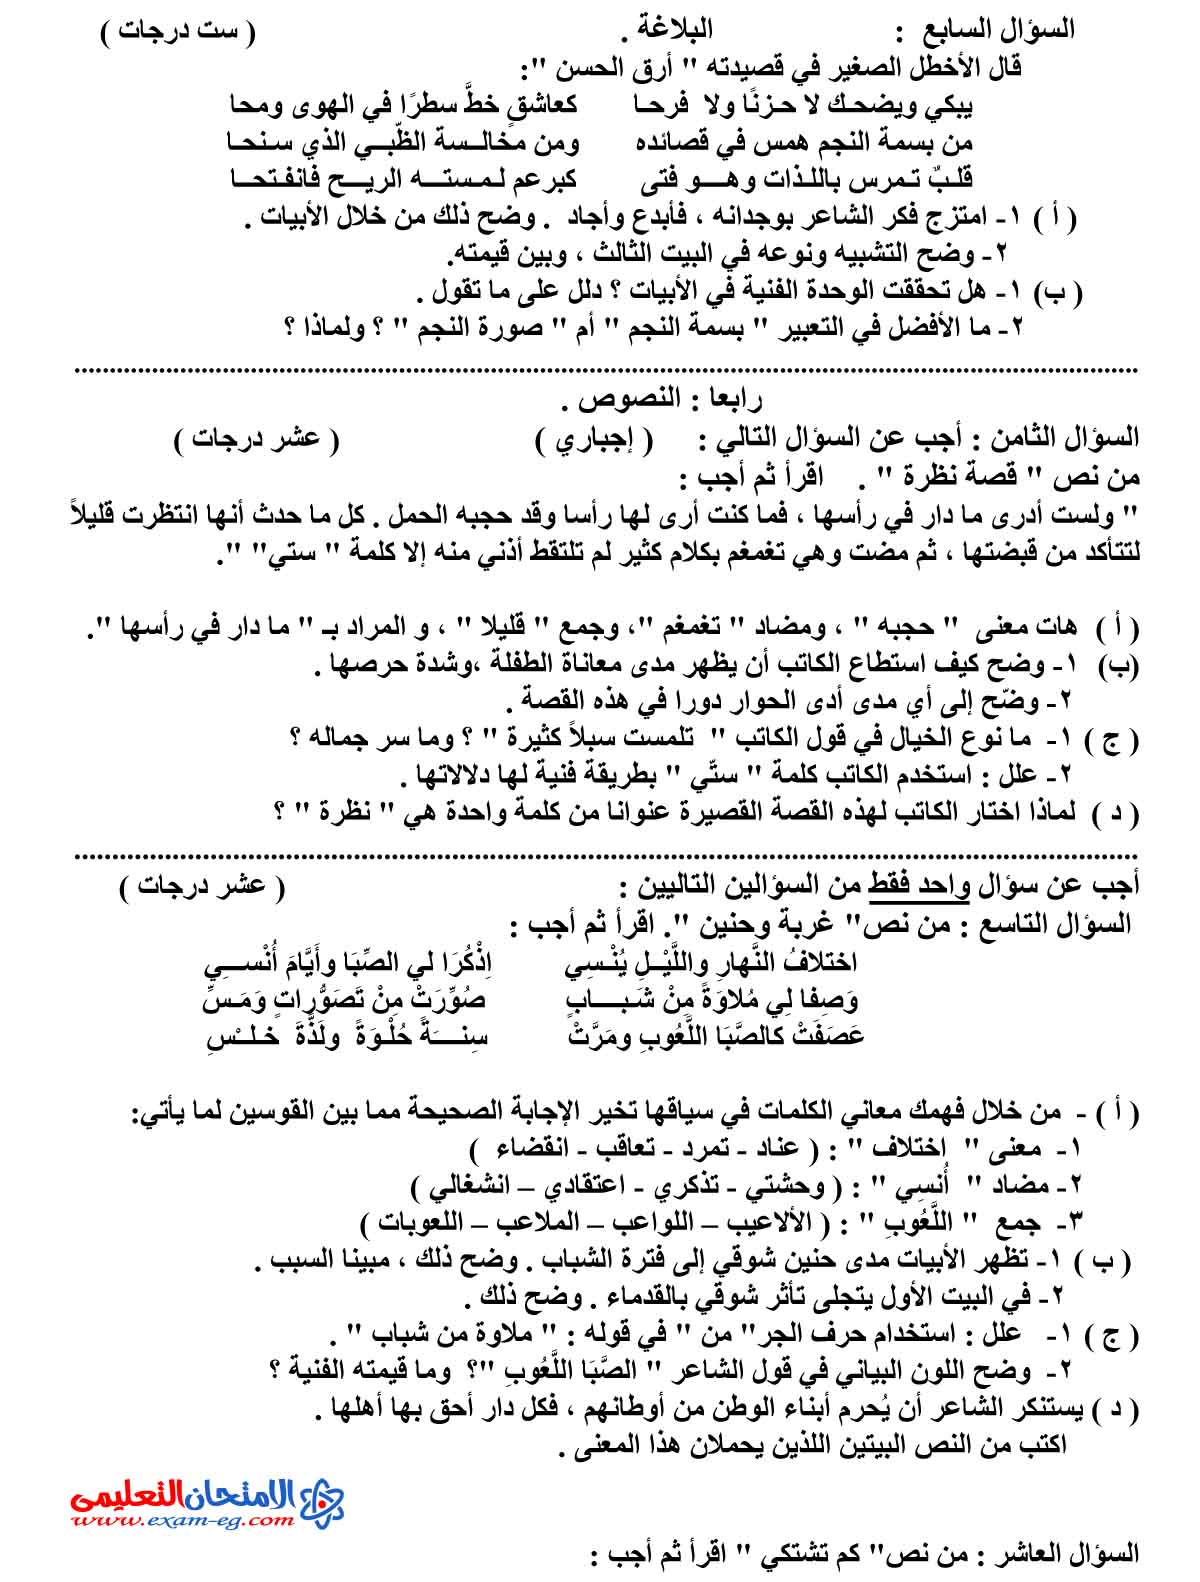 امتحان اللغة العربية 3 - مدرسة اون لاين (3)